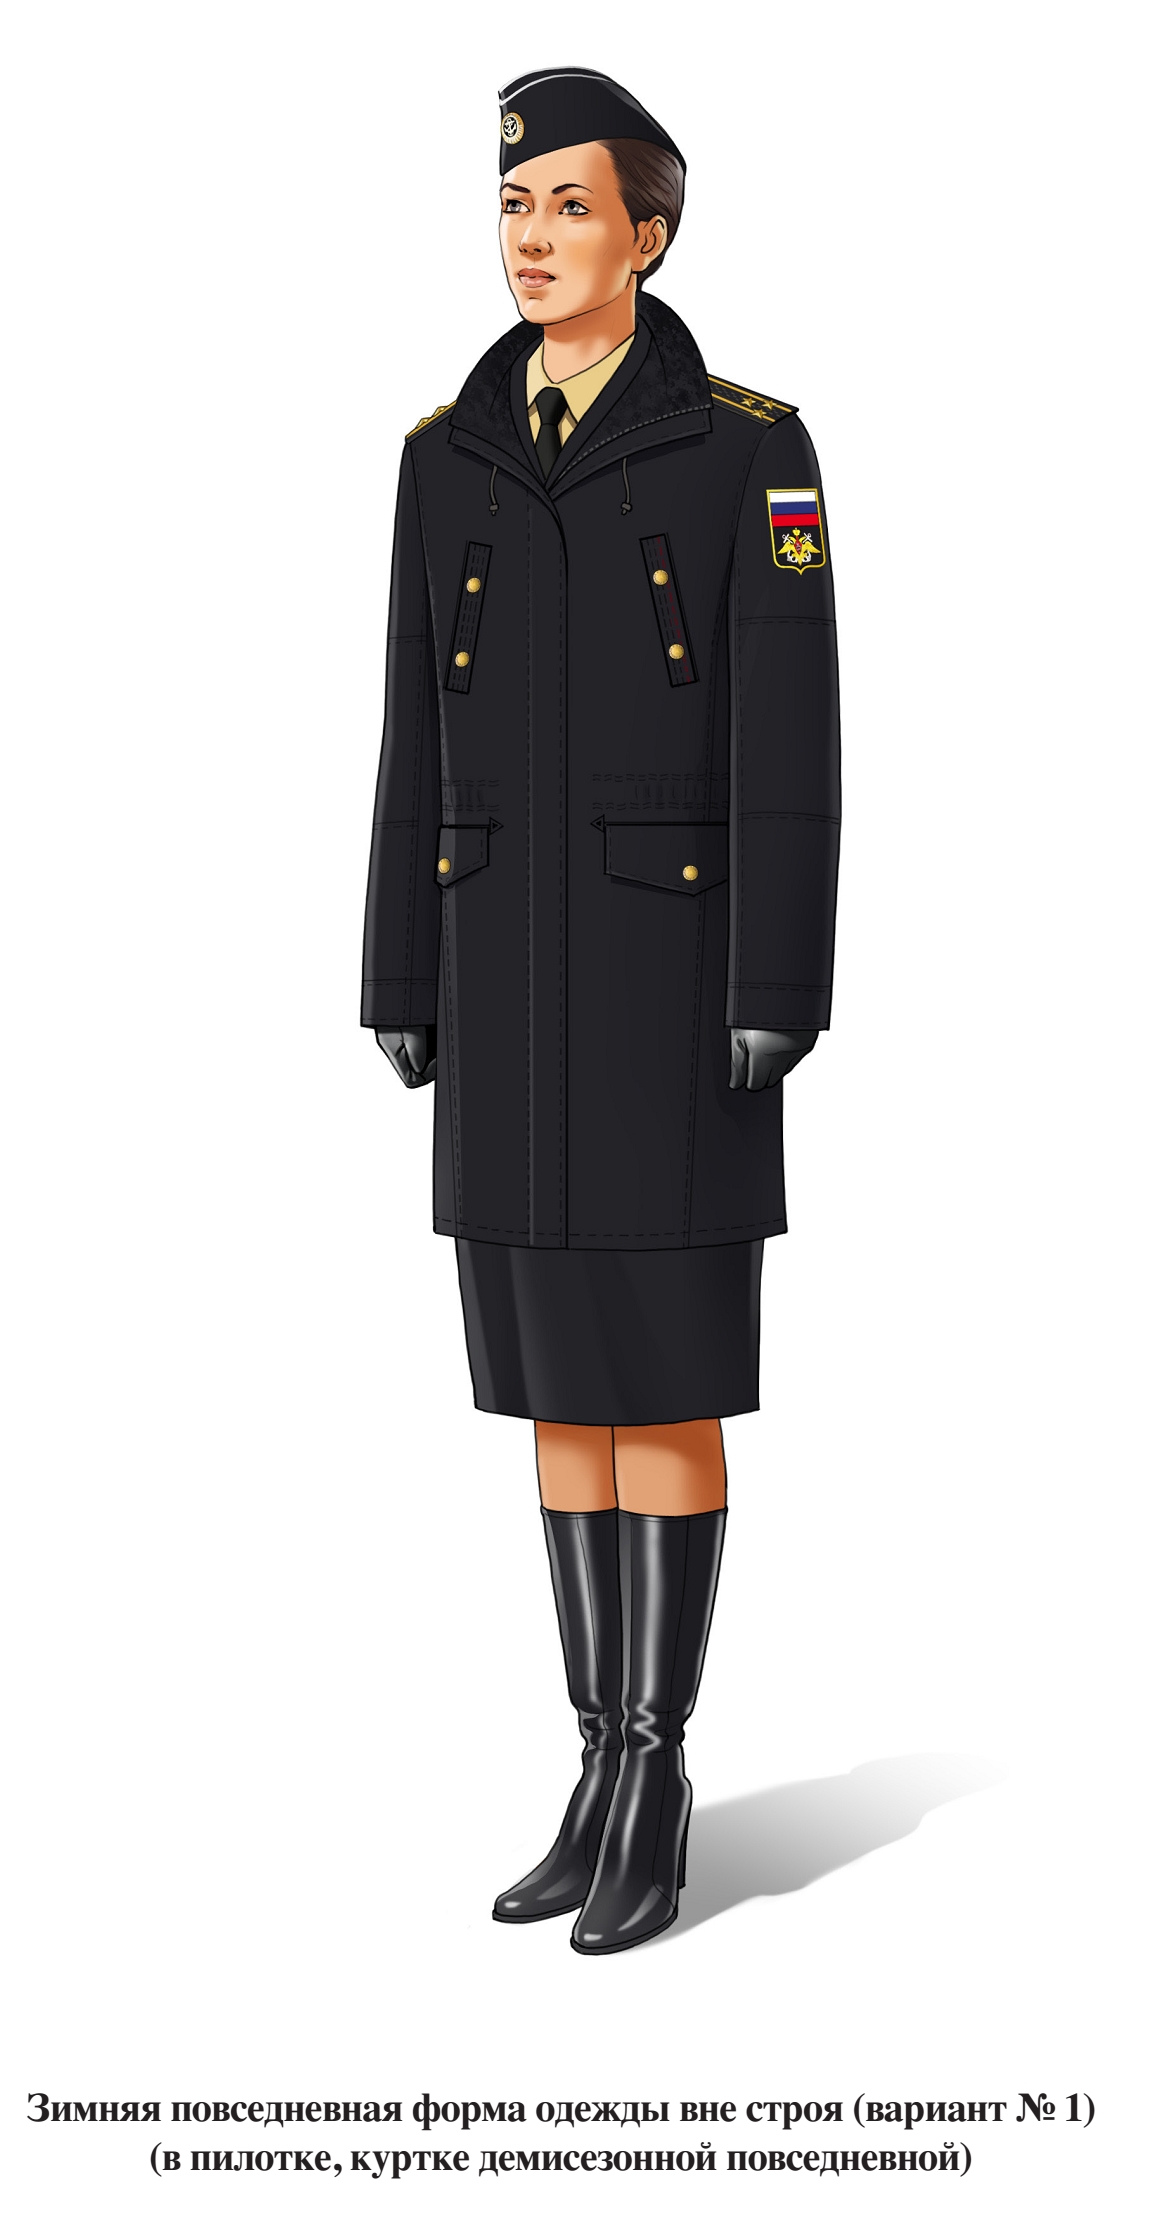 Зимняя повседневная форма военнослужащих женского пола вне строя